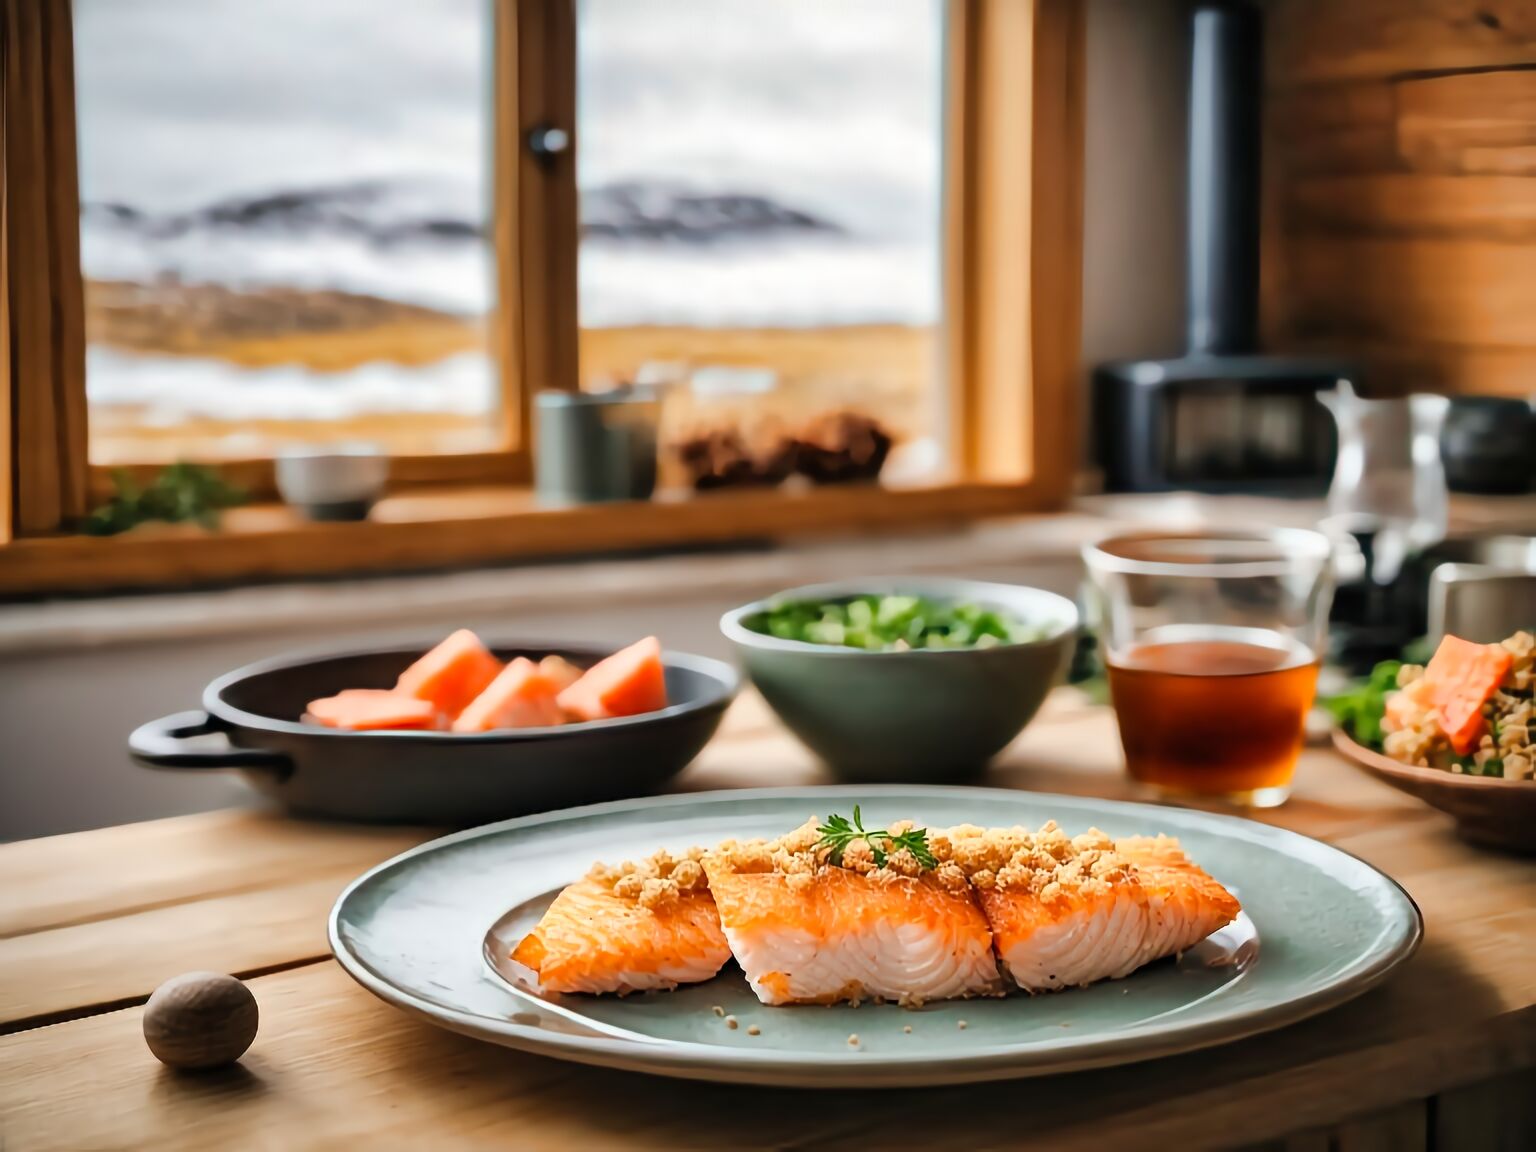 Iceland Baked Fish Recipe